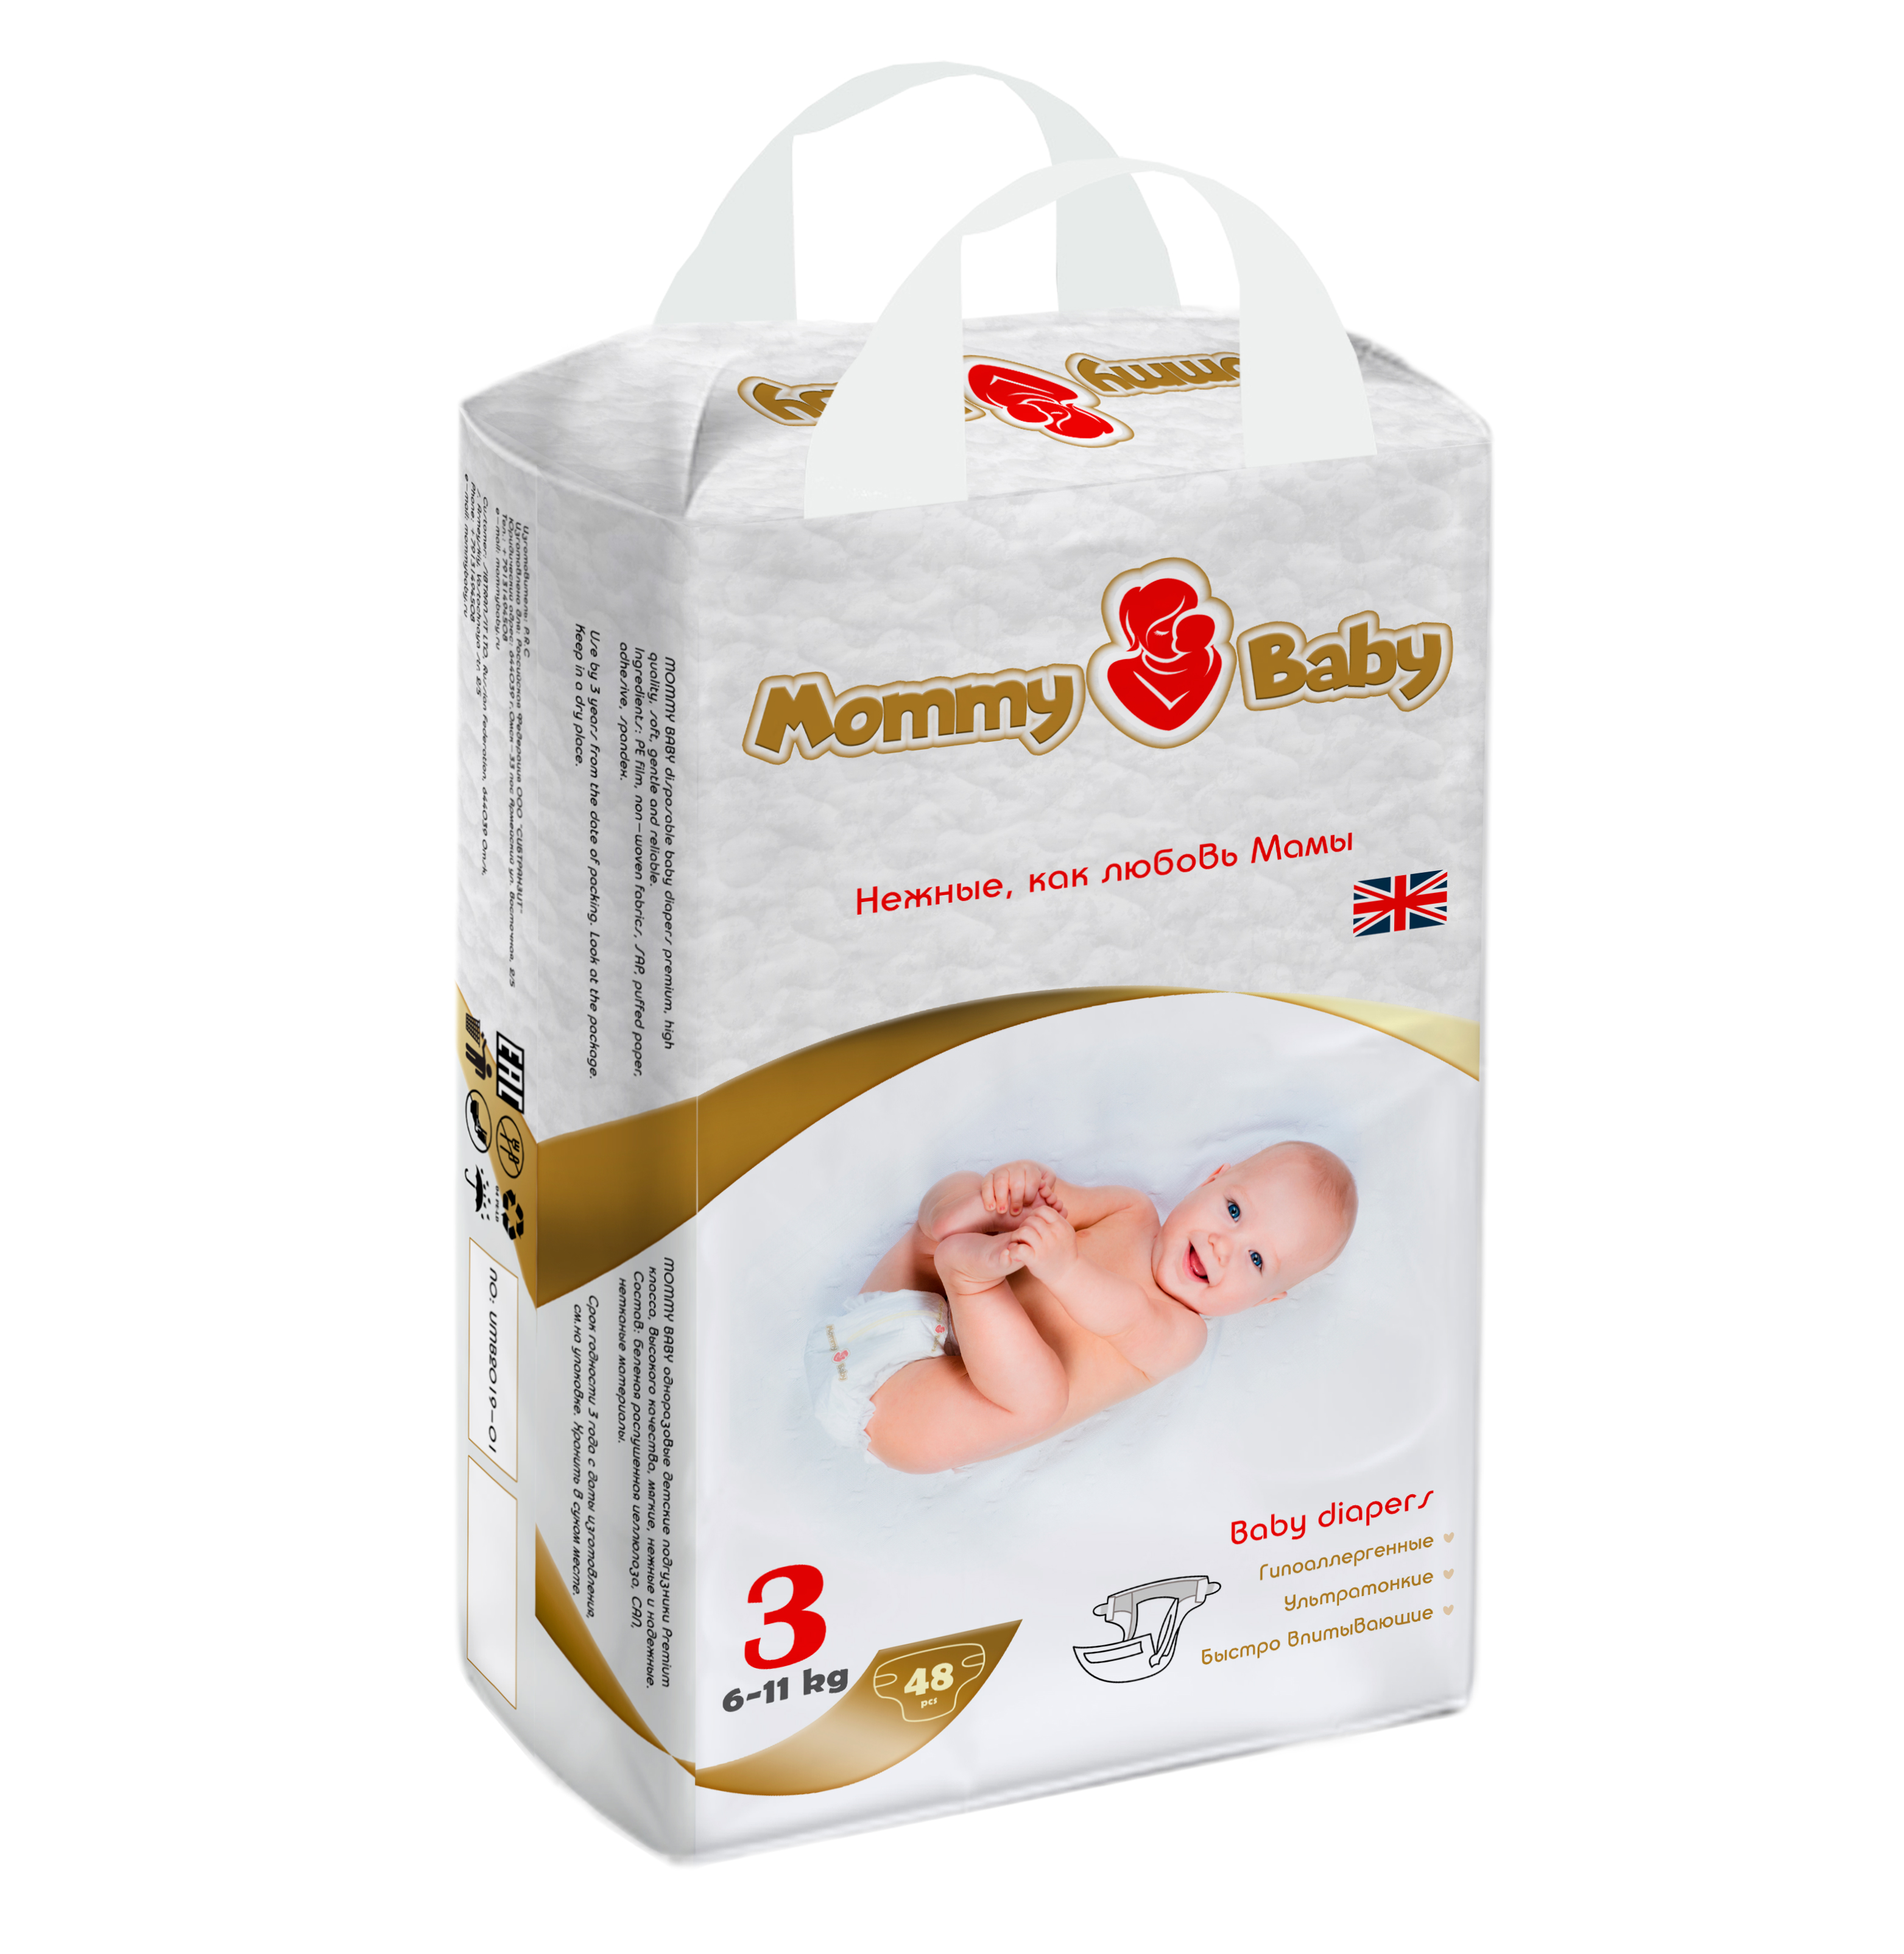 Подгузники Mommy Baby Размер 3 6-11кг 48 штук в упаковке - фото 5